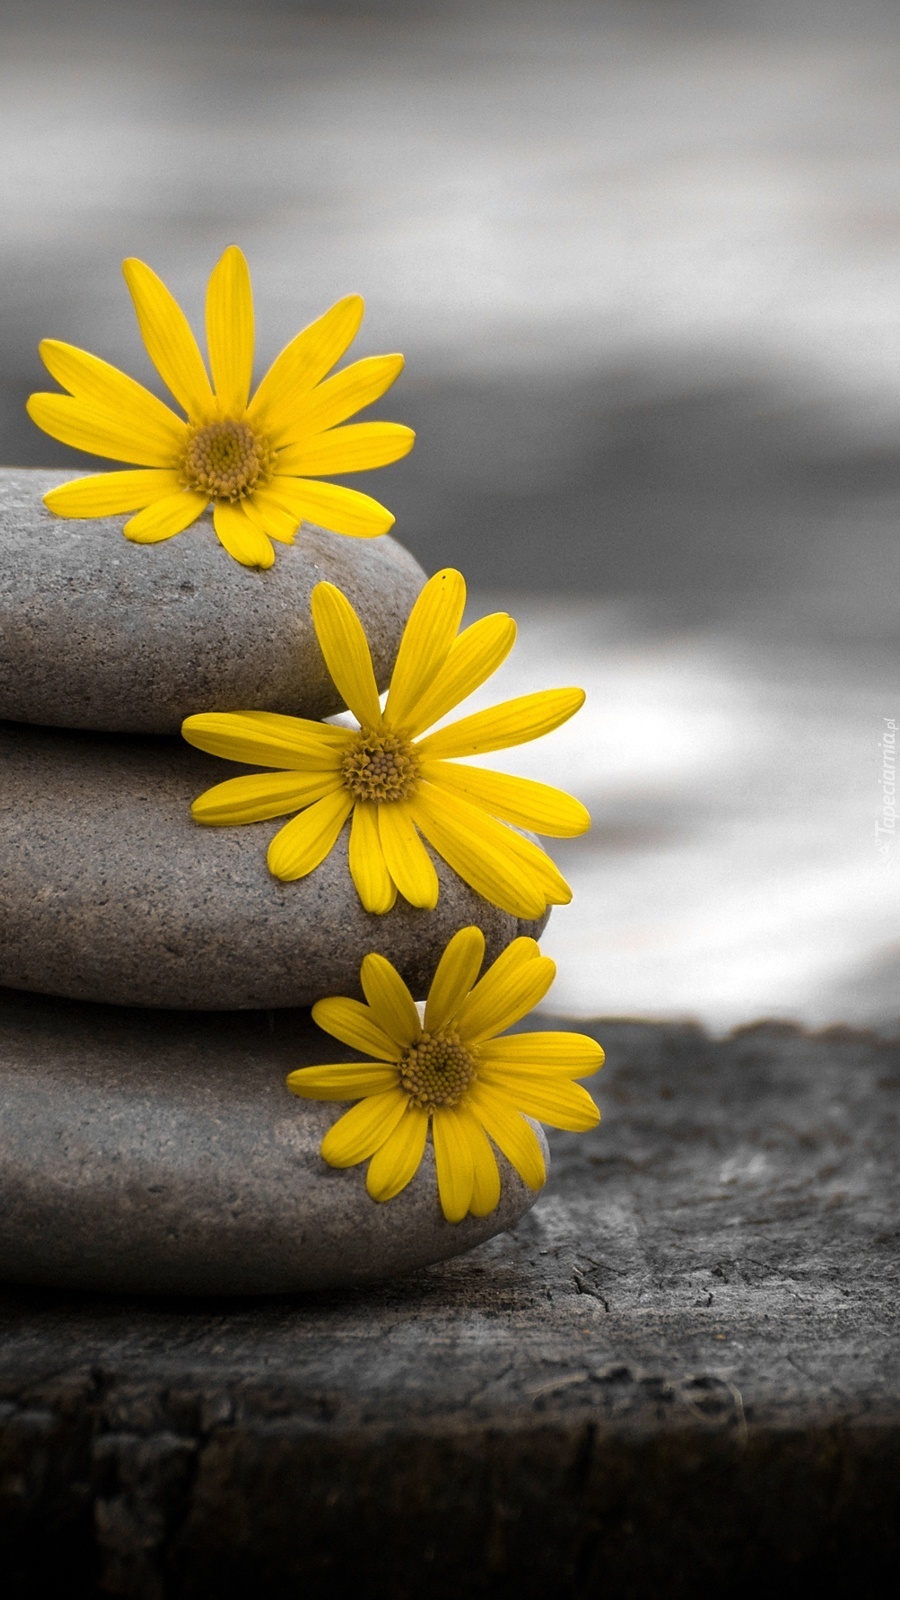 Kwiatki ułożone na kamieniach